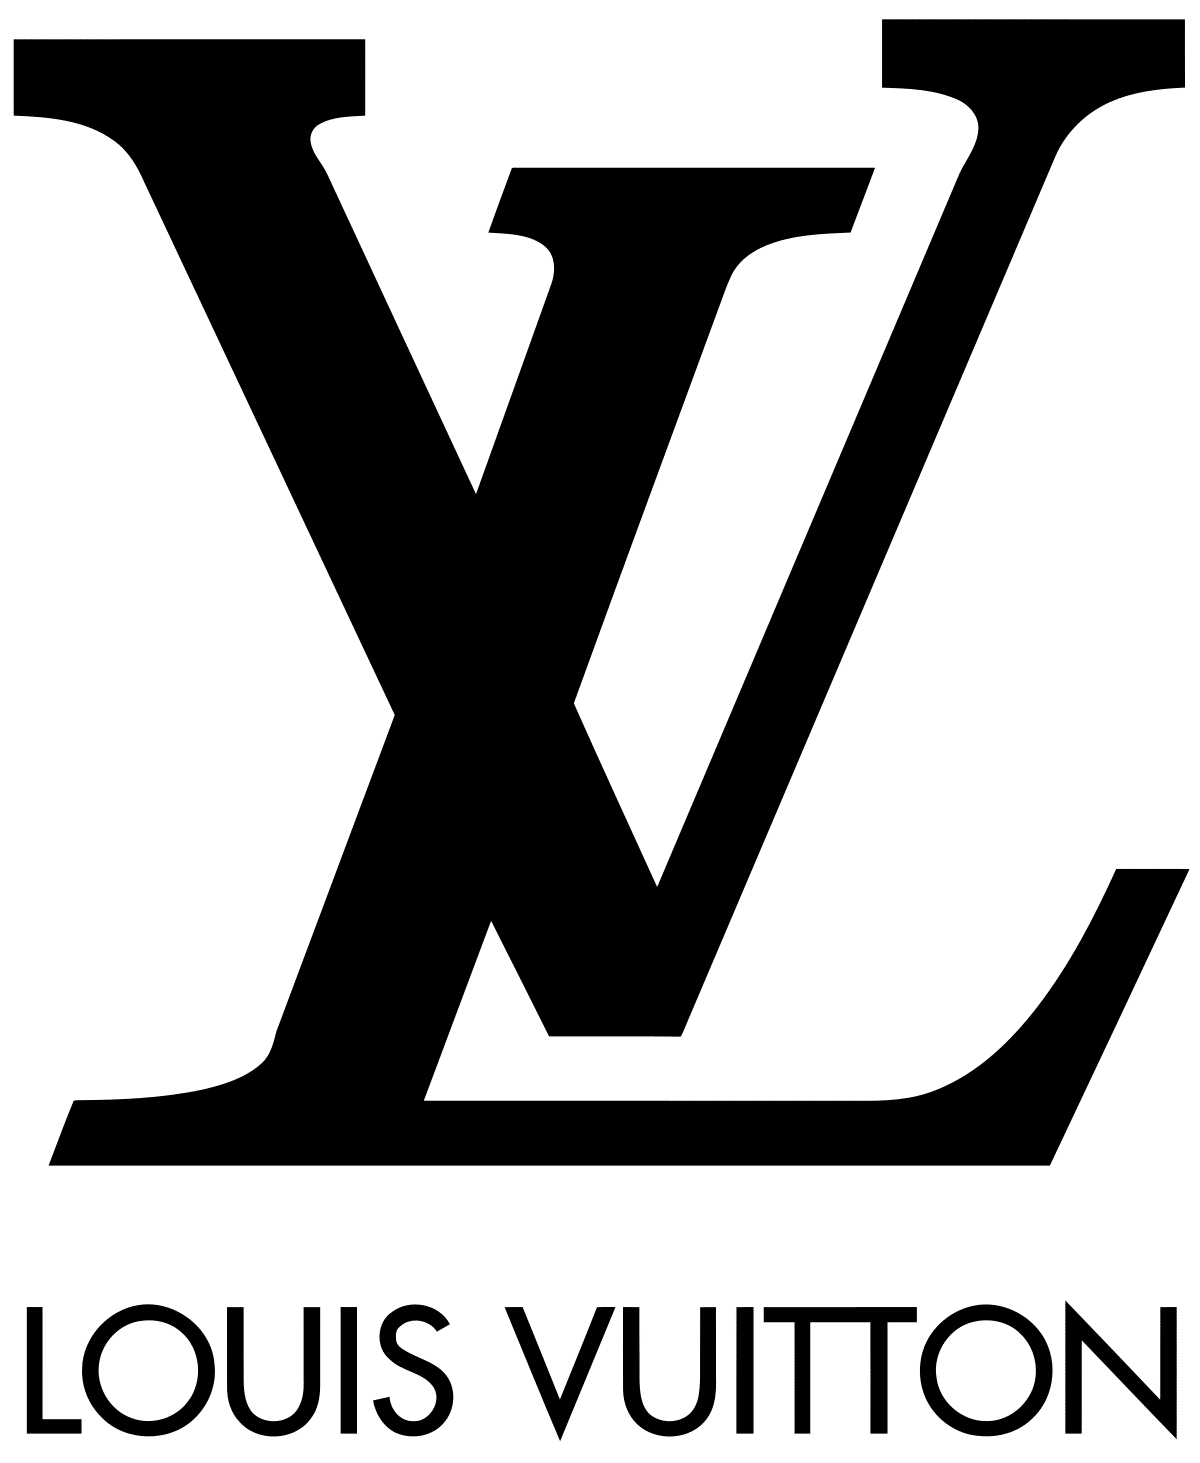 Je značkový obchod Louis Vuitton na Slovensku?